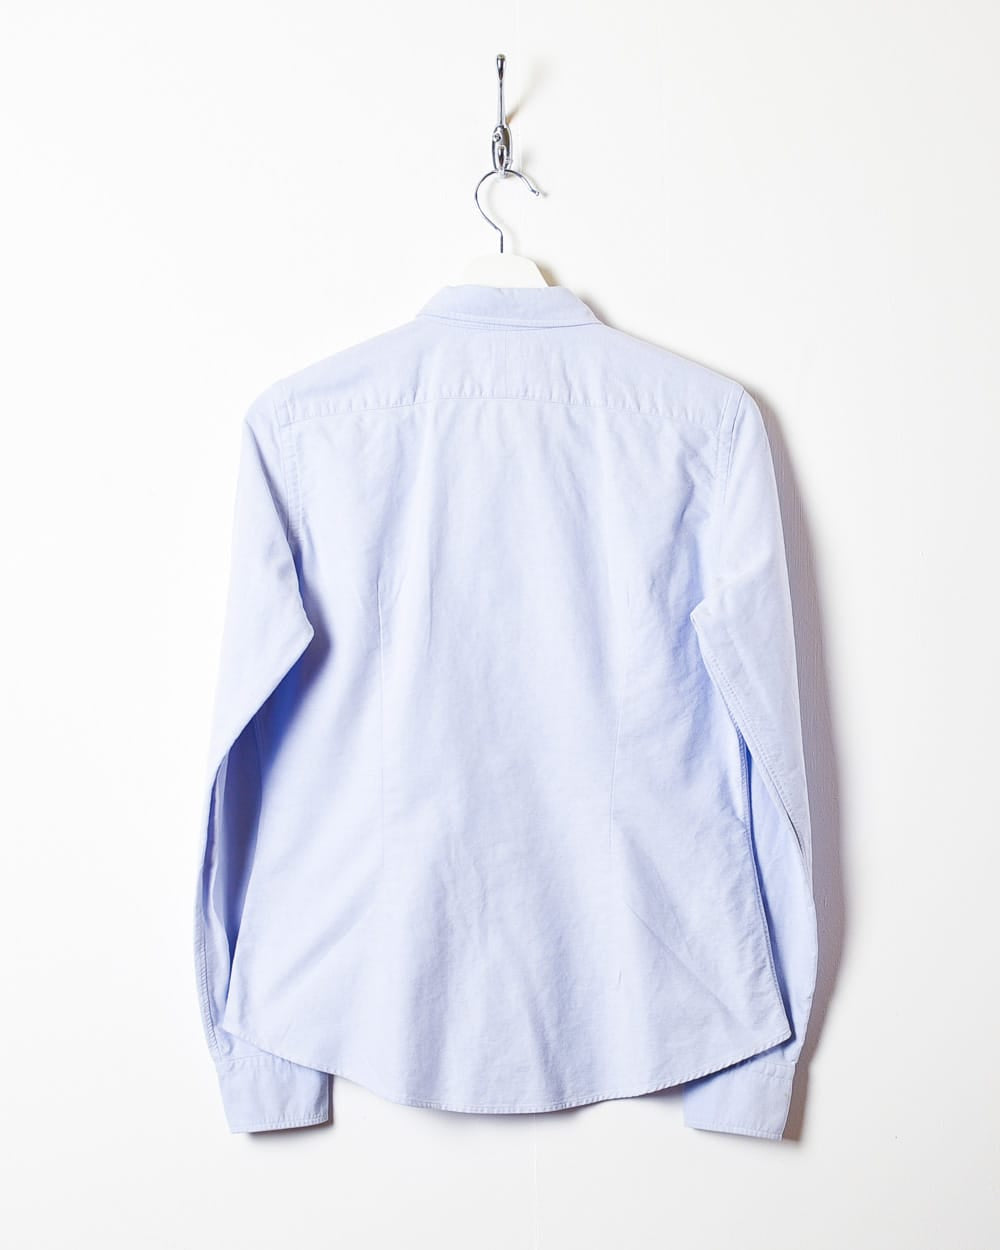 BabyBlue Polo Ralph Lauren Shirt - Small Women's